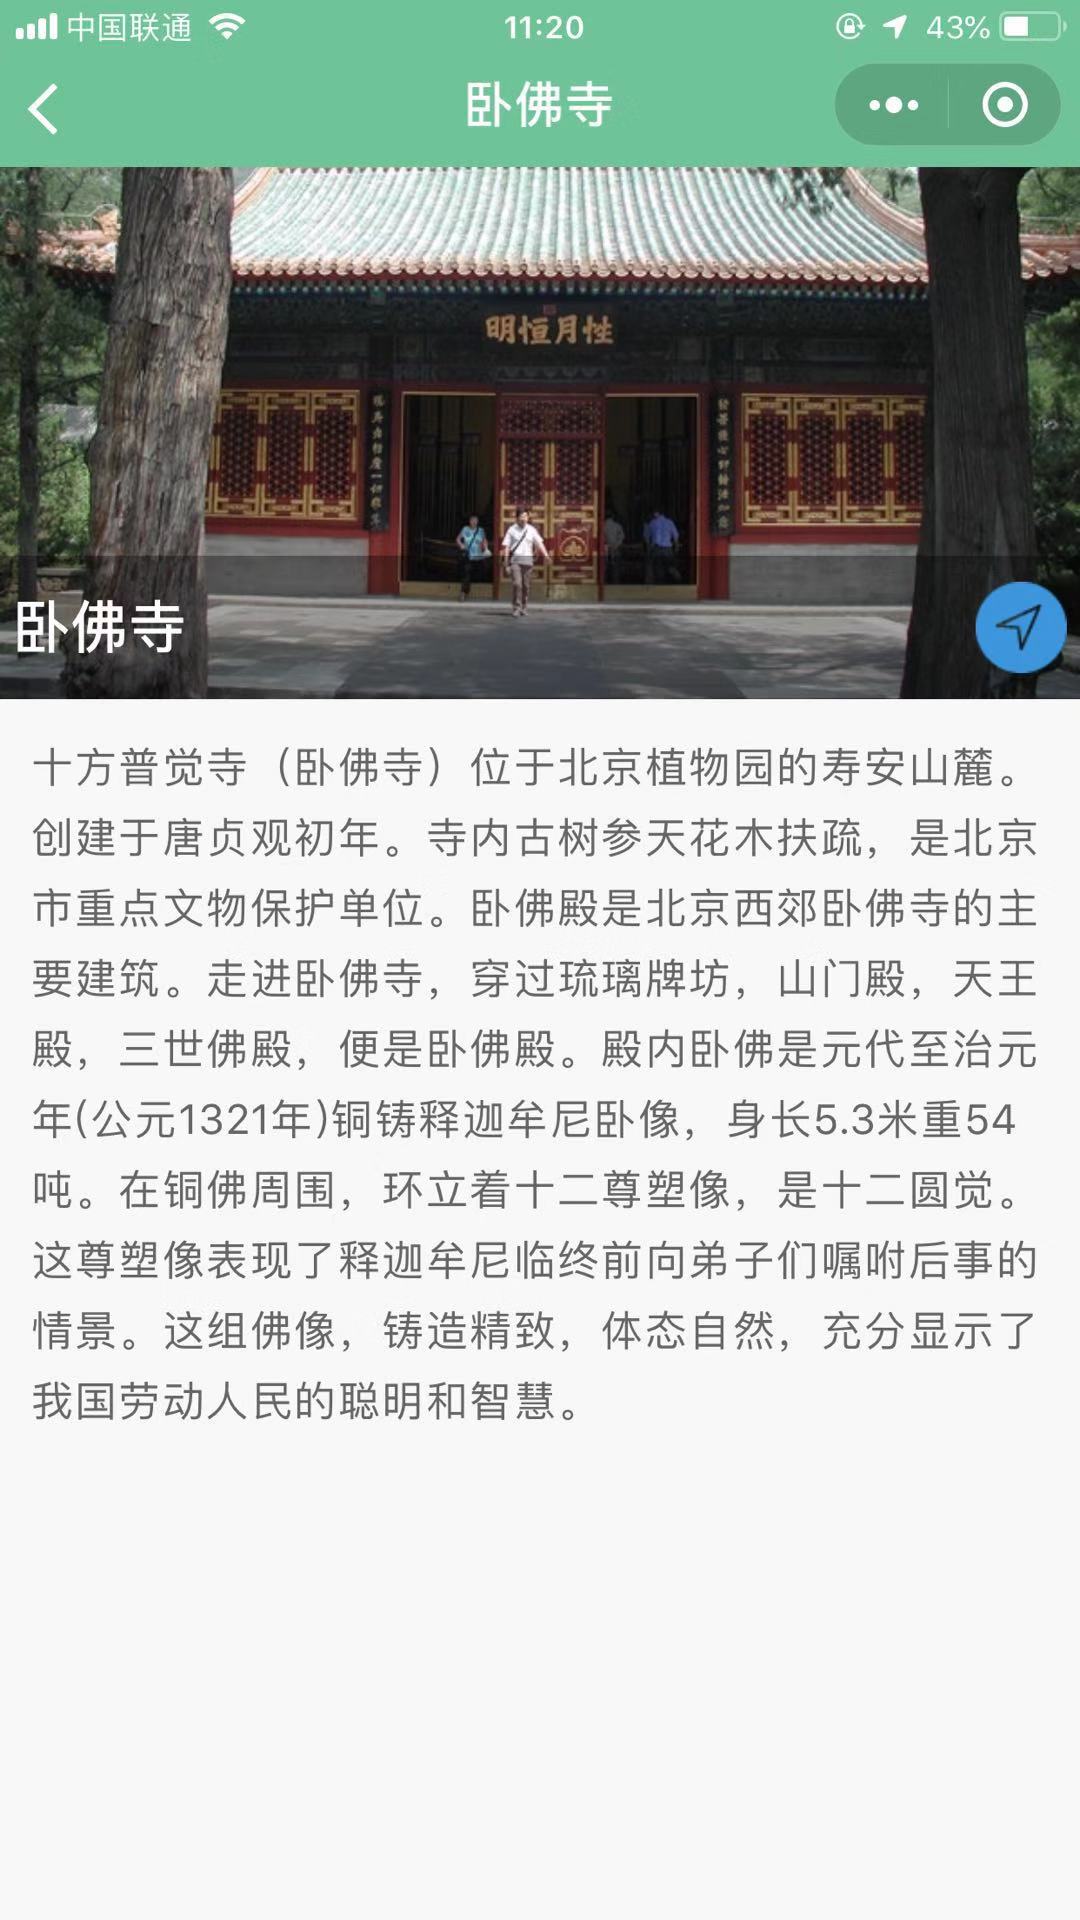 北京植物园到了那_北京植物园到了那小程序_北京植物园到了那微信小程序